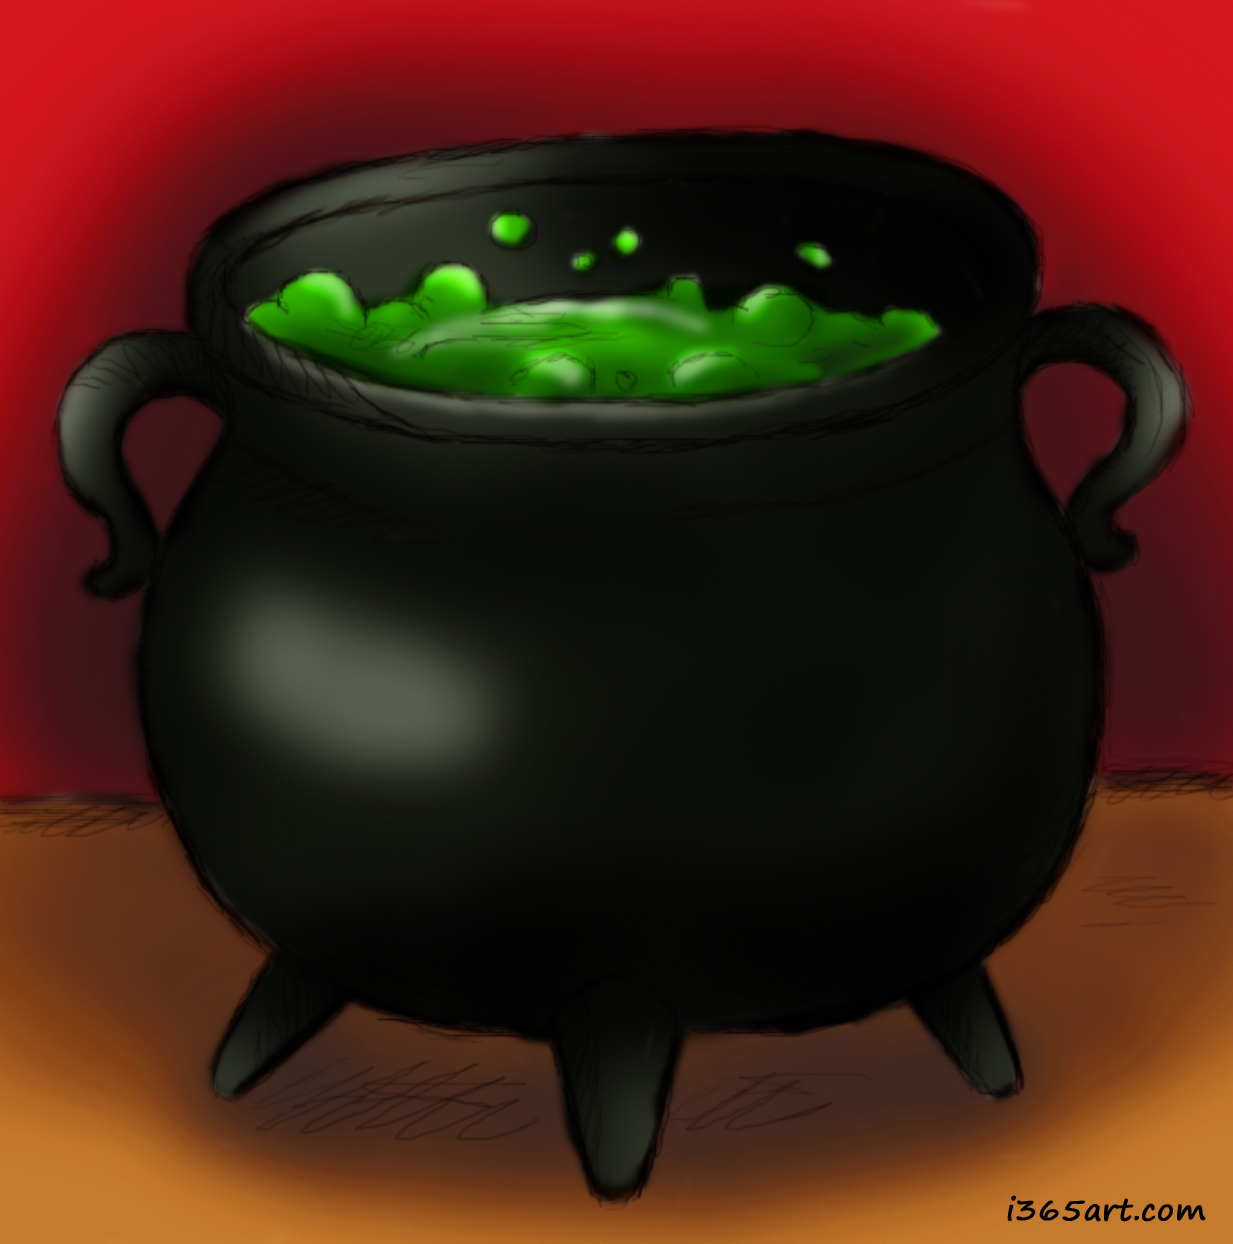 cauldron clipart bubbly